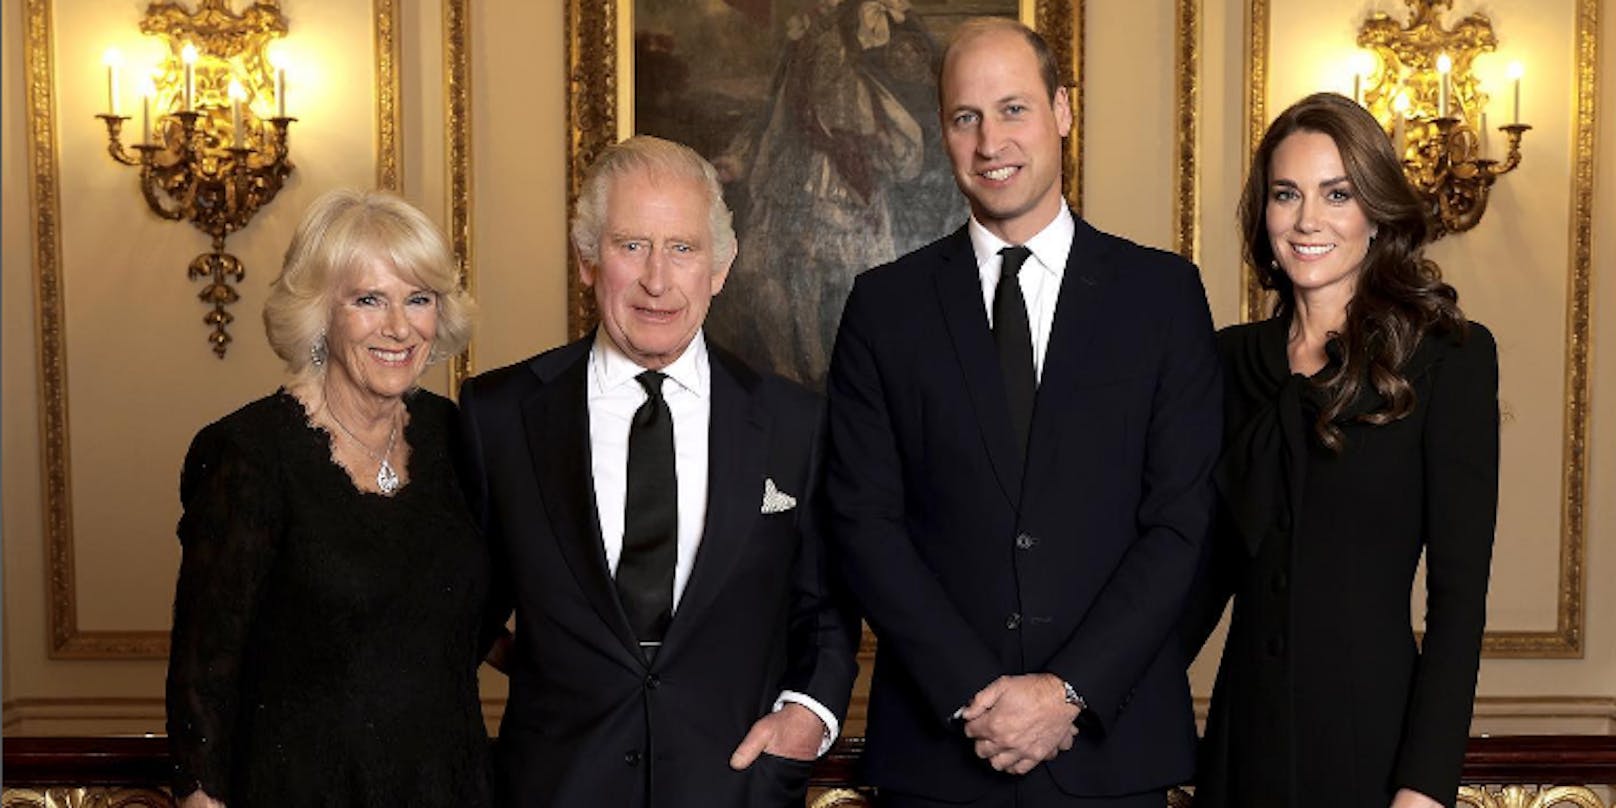 Das Bild wurde am 18. September aufgenommen. Queen Consort Camilla, König Charles III. und der Prinz und die Prinzessin von Wales.